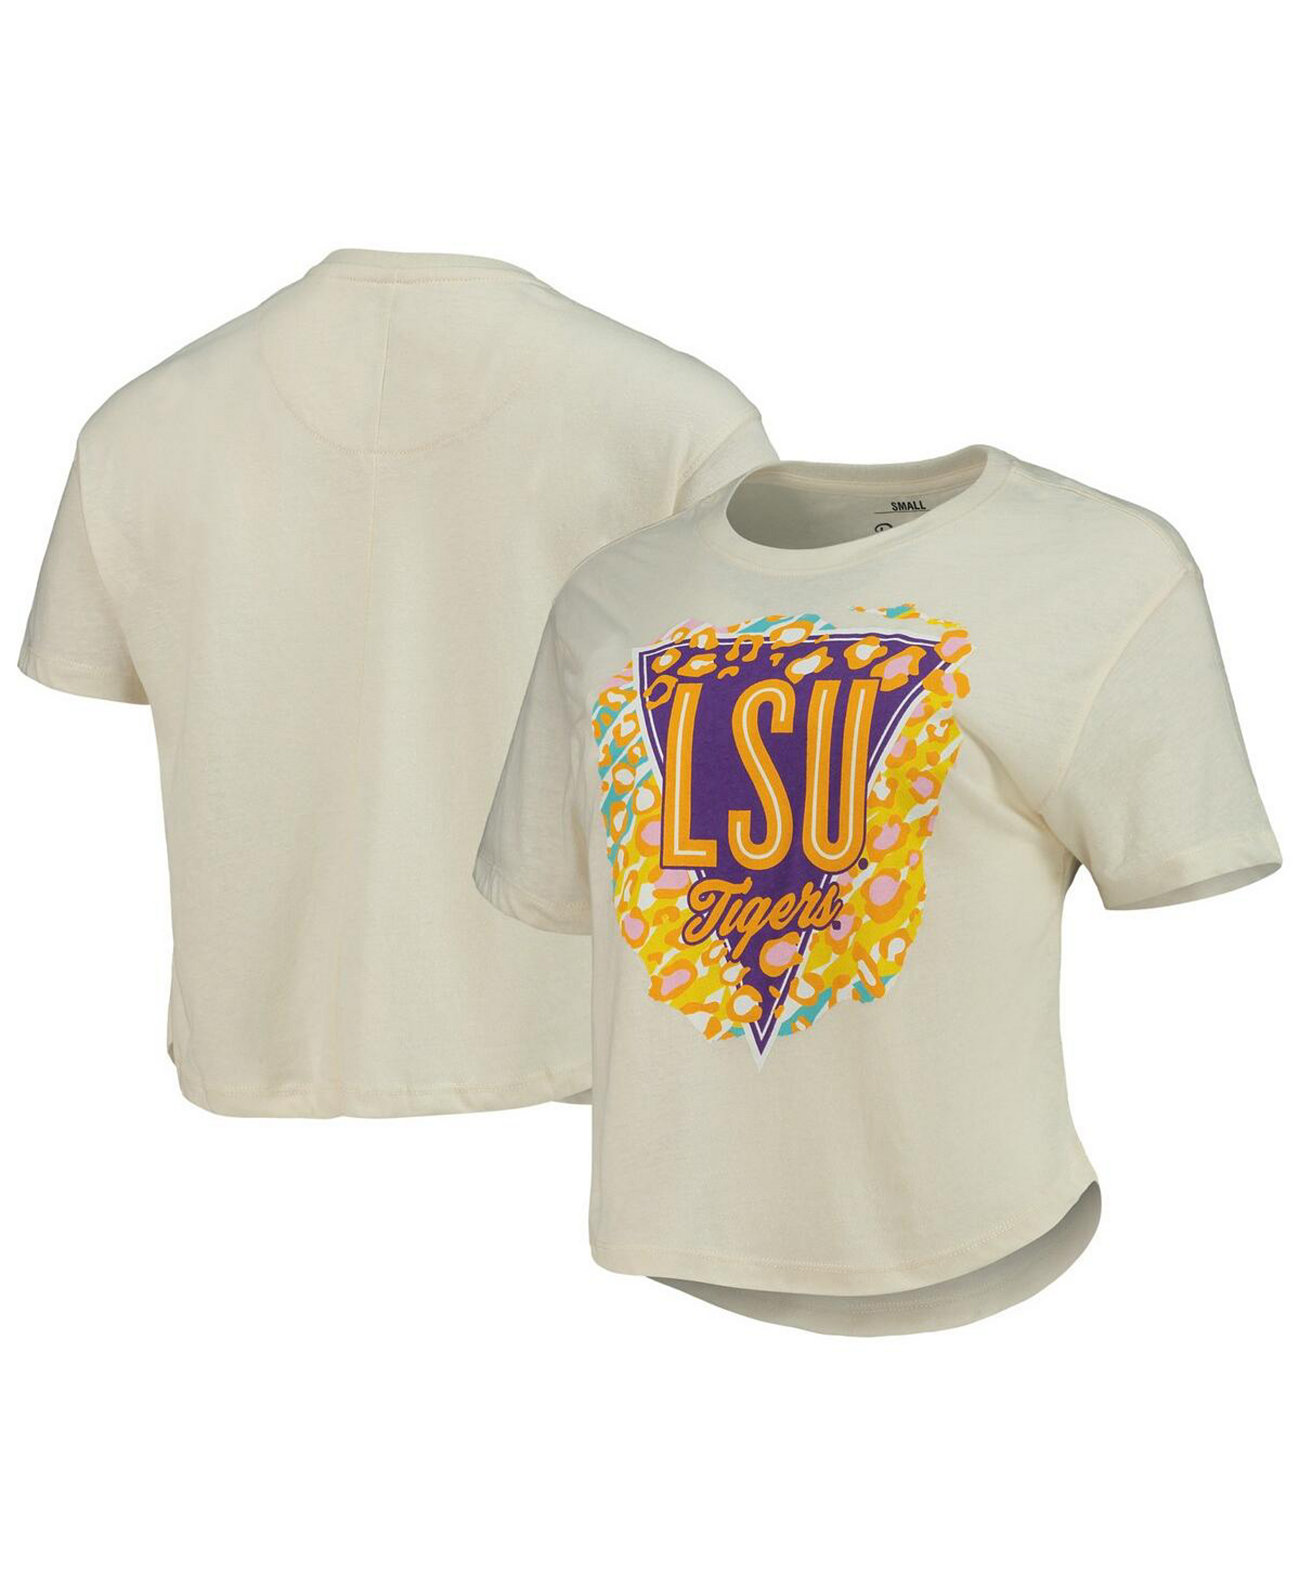 Женская кремовая укороченная футболка с животным принтом LSU Tigers Taylor Pressbox